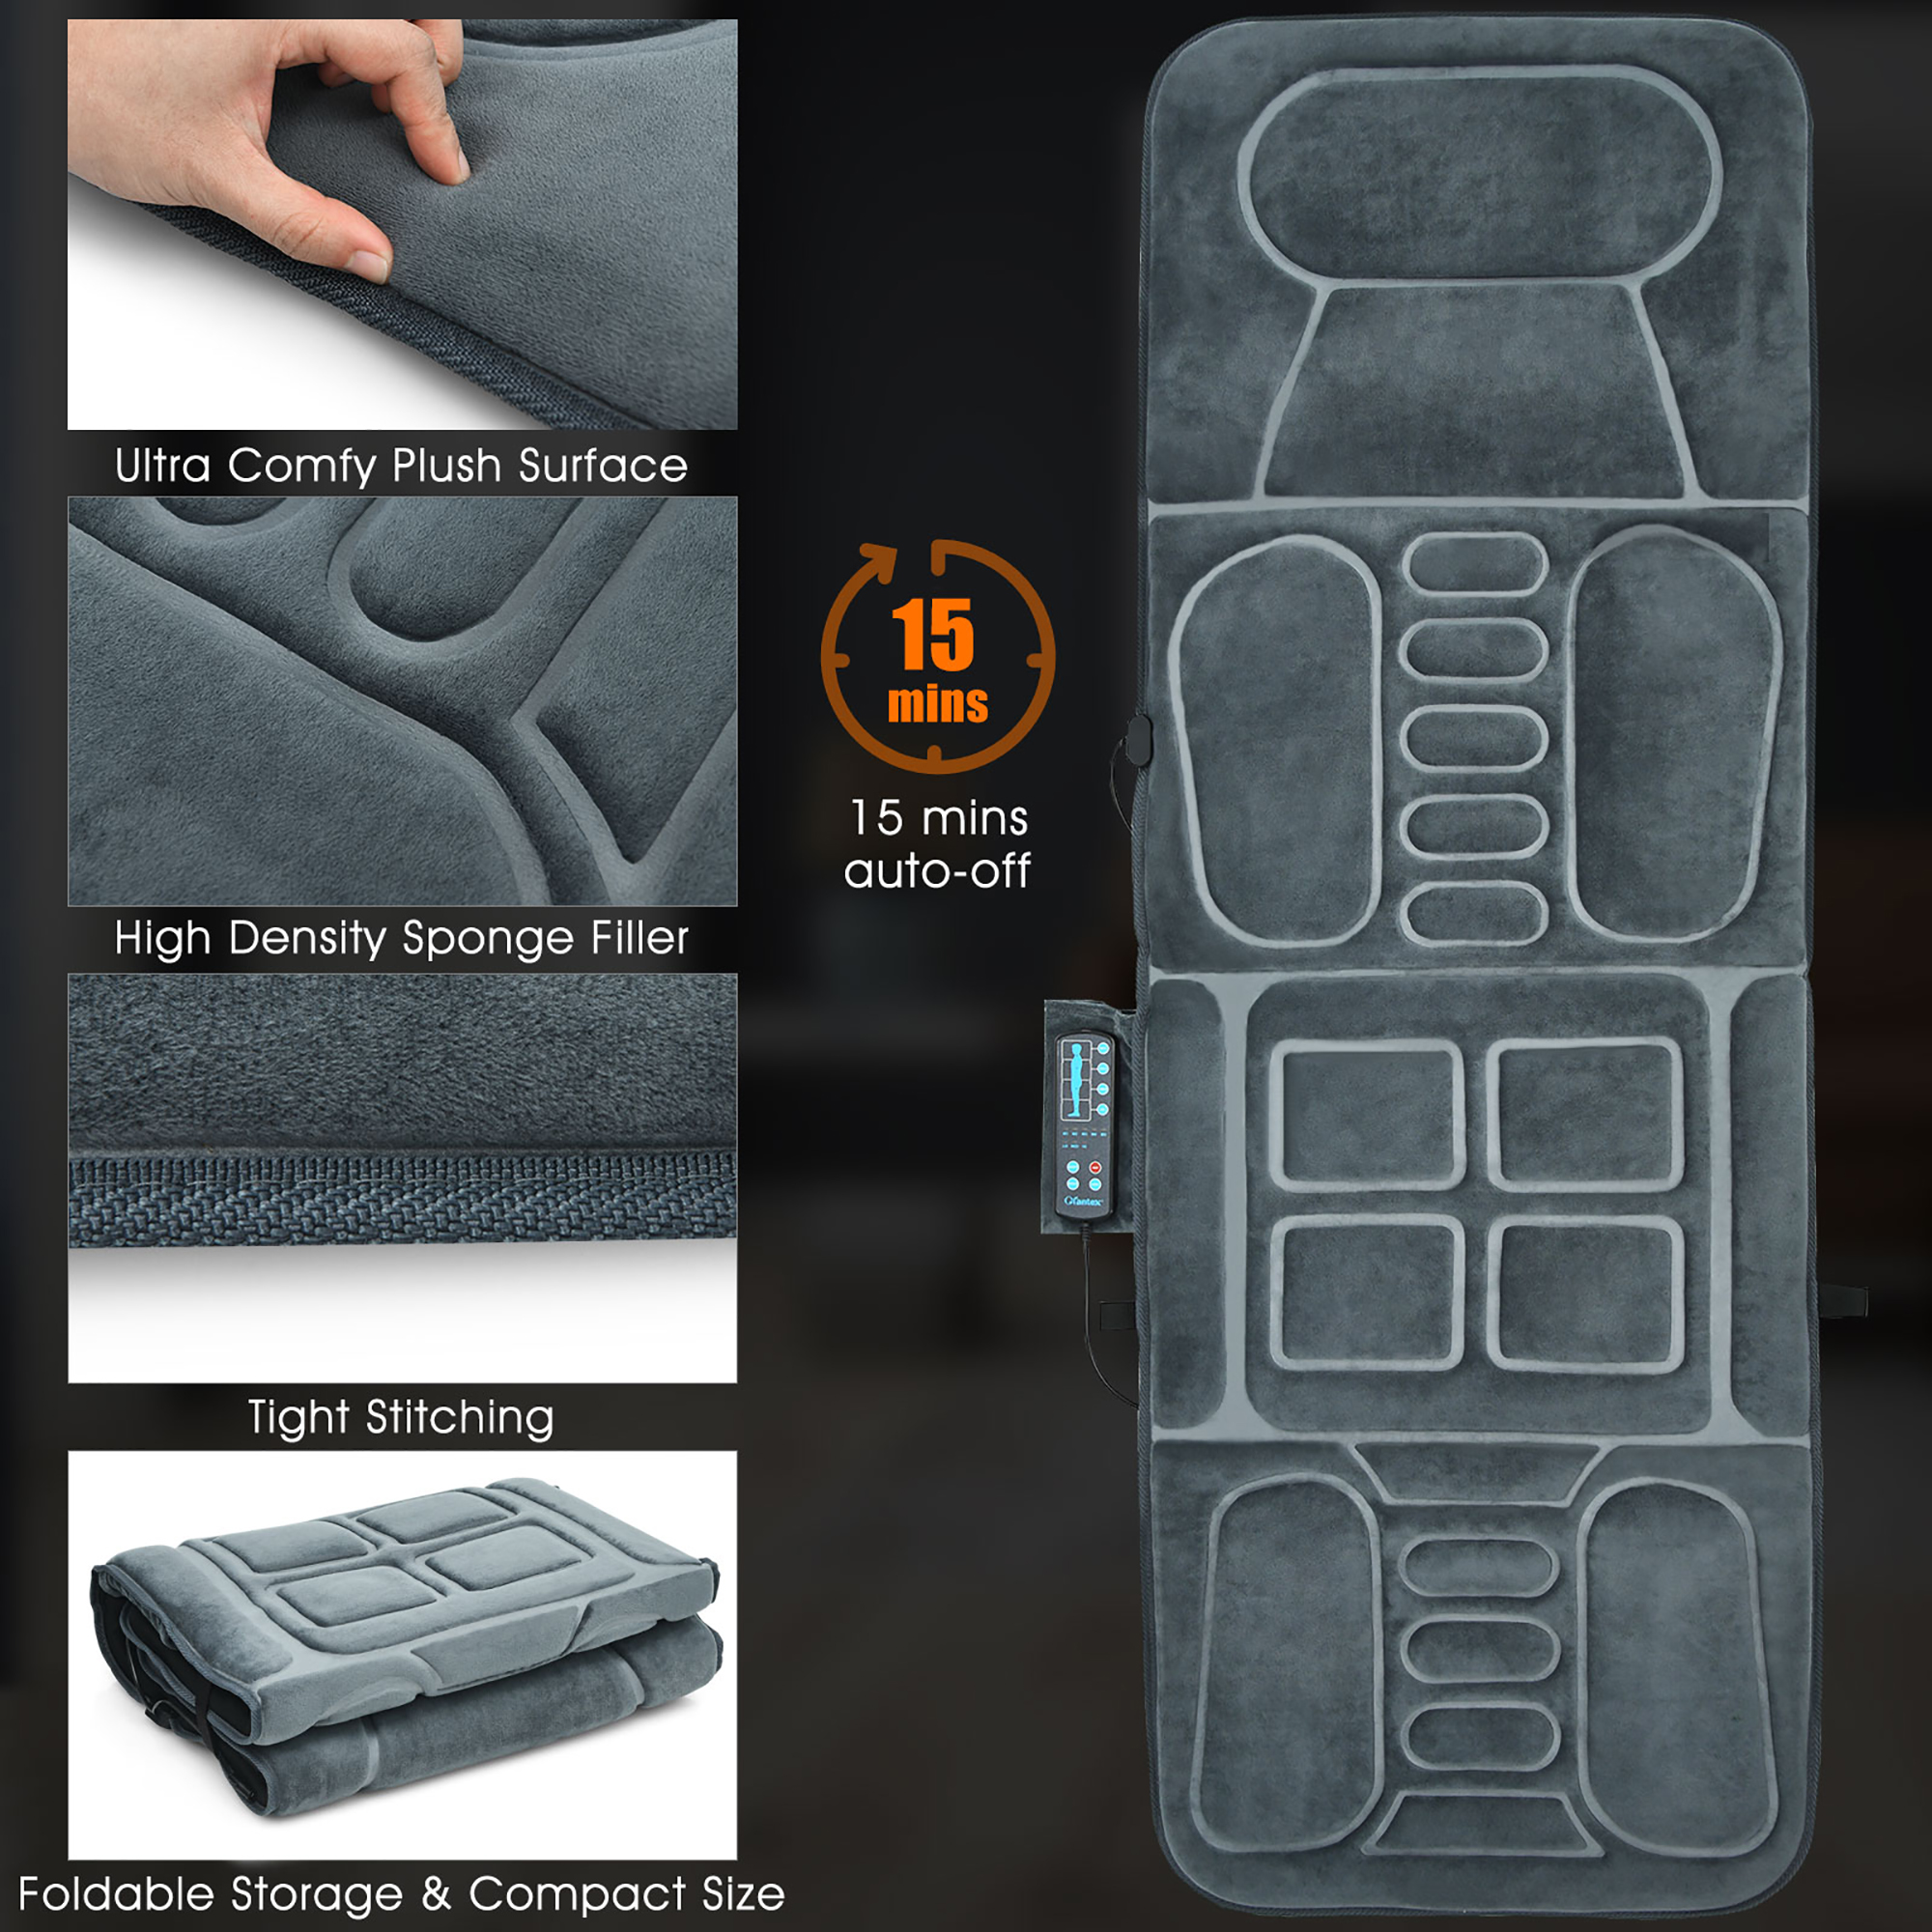 Costway Foldable Massage Mat Full Body Massager with Heat & 10 Vibration Motors